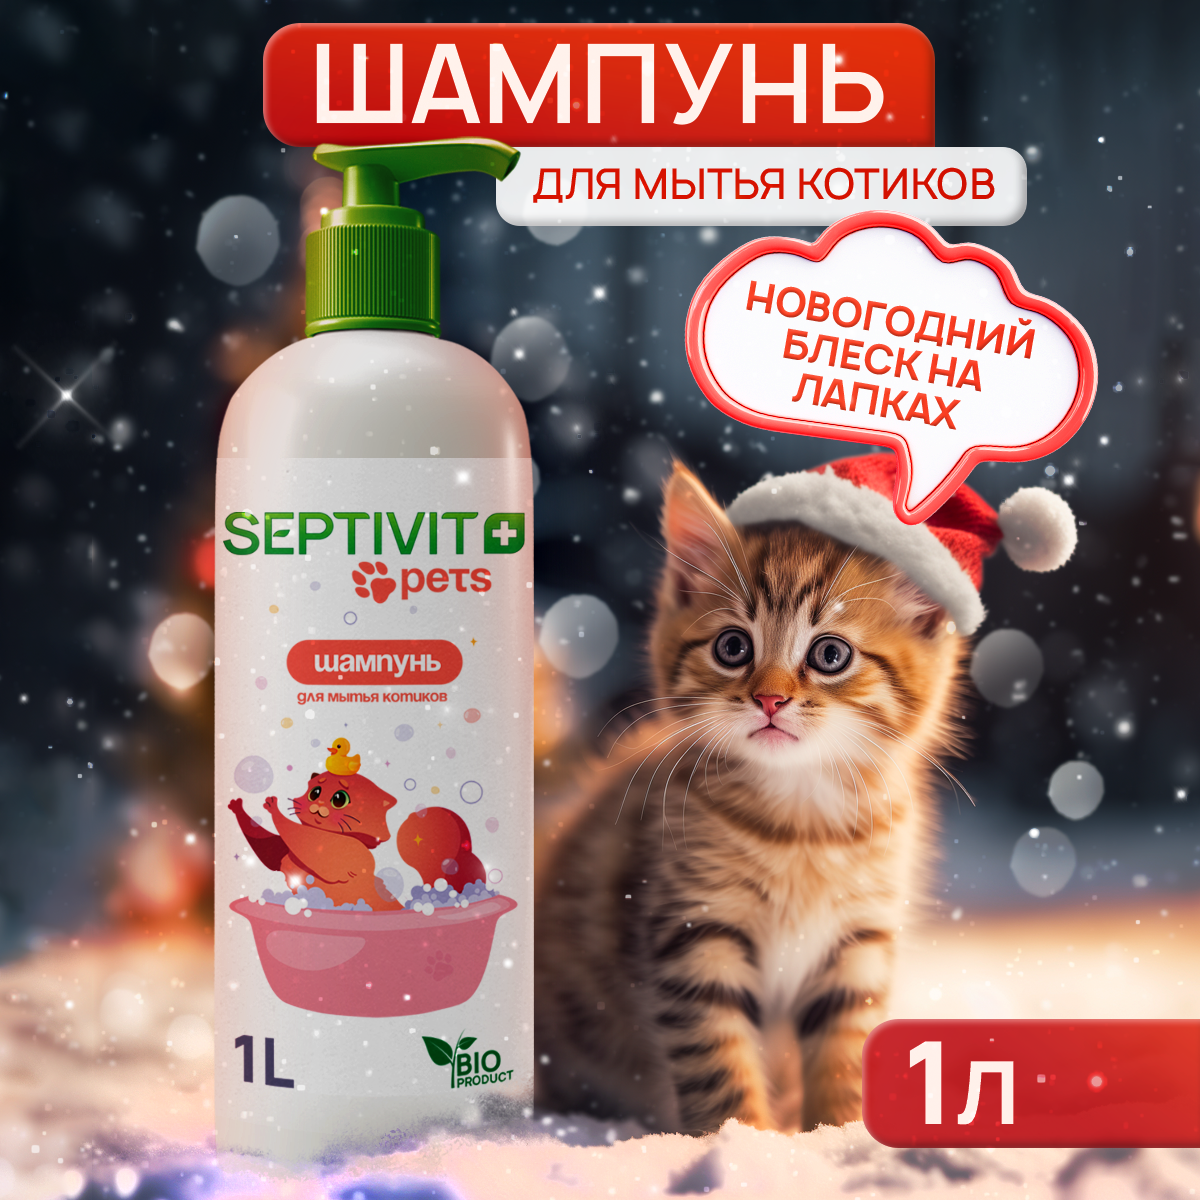 Шампунь для кошек Septivit Premium, 1 л